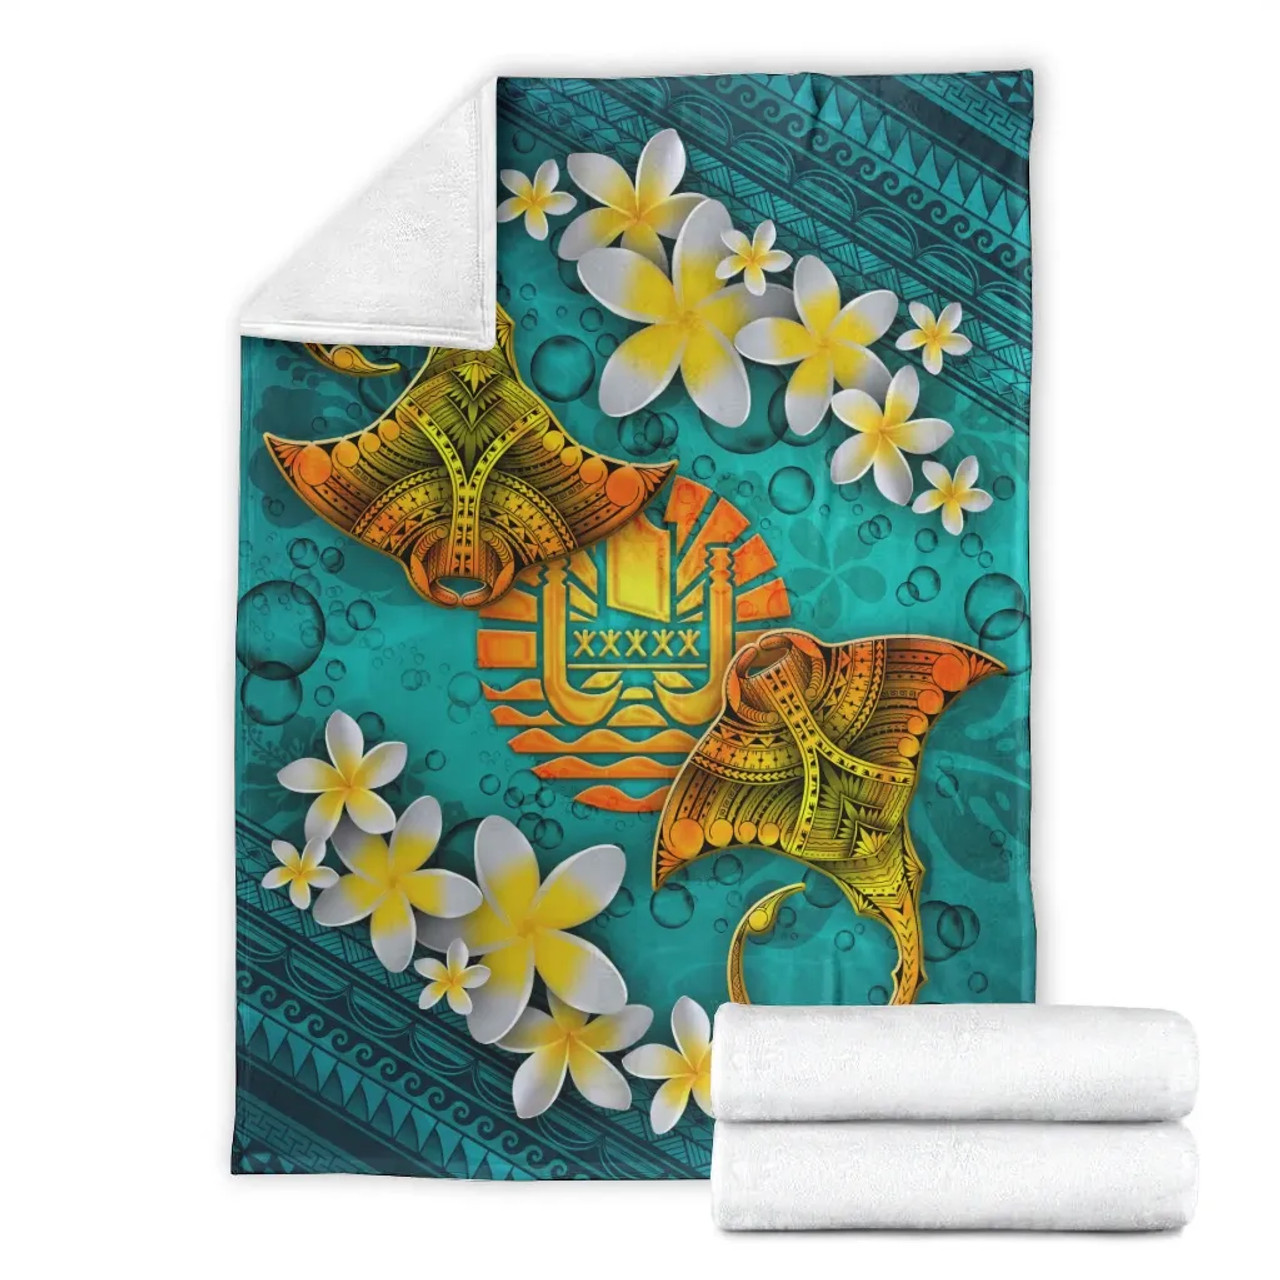 Tahiti Polynesian Blanket - Manta Ray Ocean 7